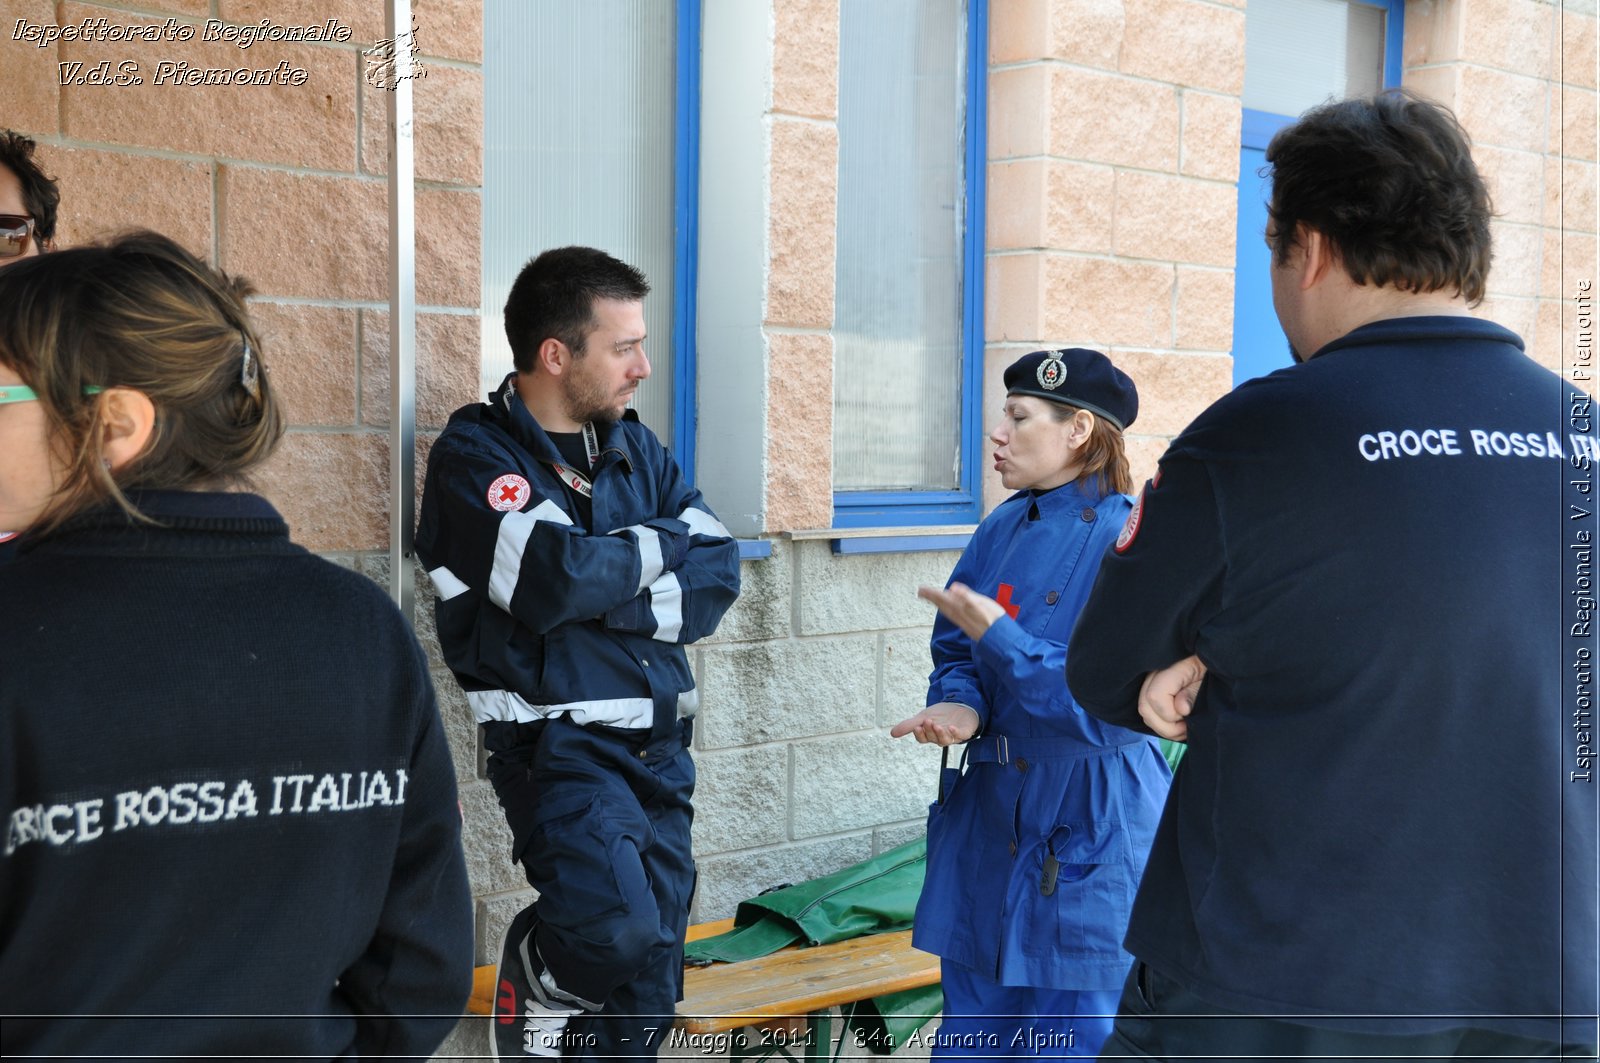 Torino  - 7 Maggio 2011 - 84a Adunata Nazionale Alpini -  Croce Rossa Italiana - Ispettorato Regionale Volontari del Soccorso Piemonte